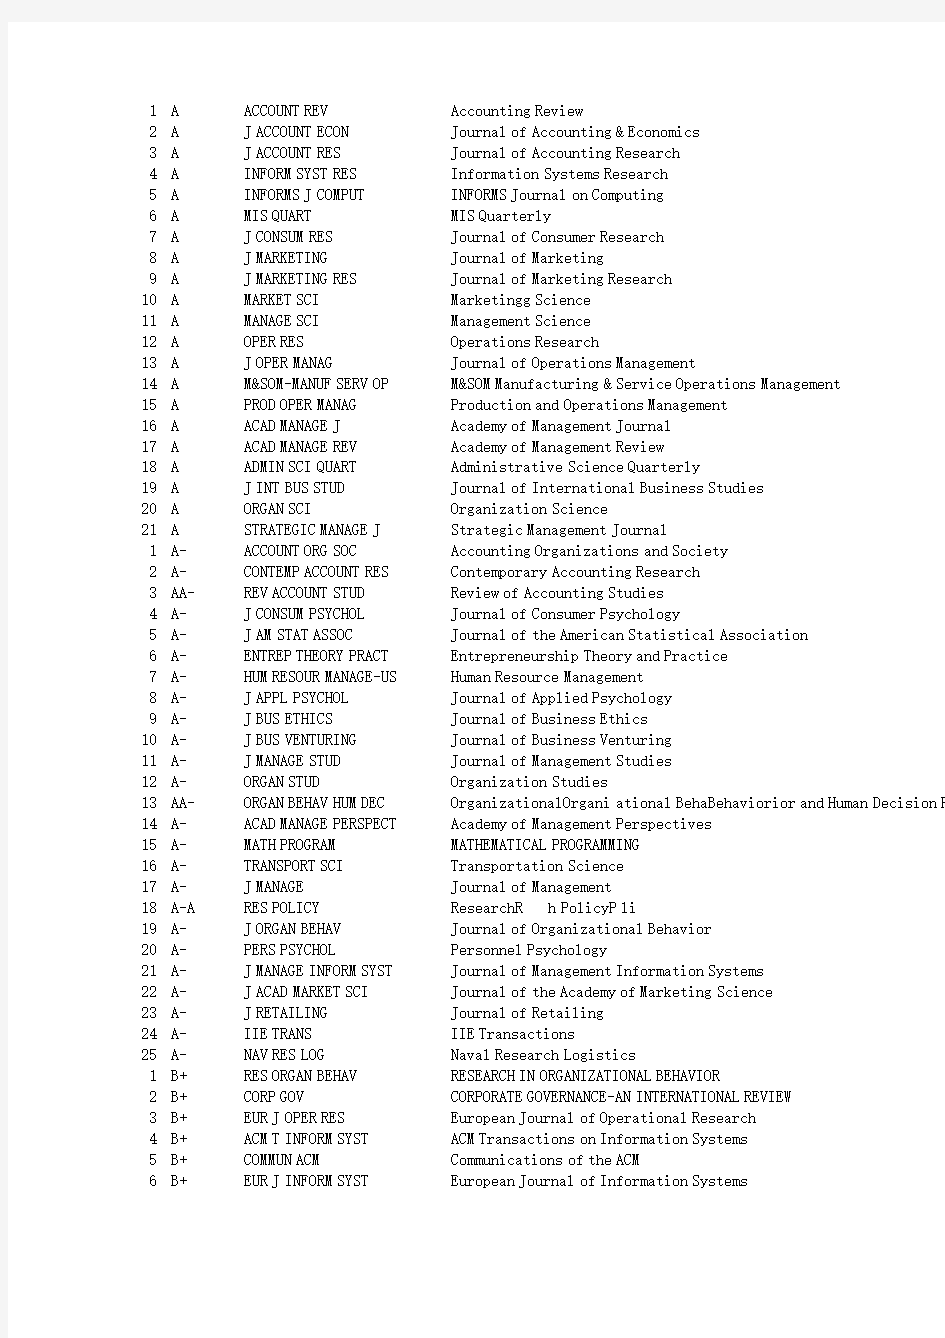 上海交通大学安泰经济与管理管学院外文学术期刊分级列表-管理类20110726